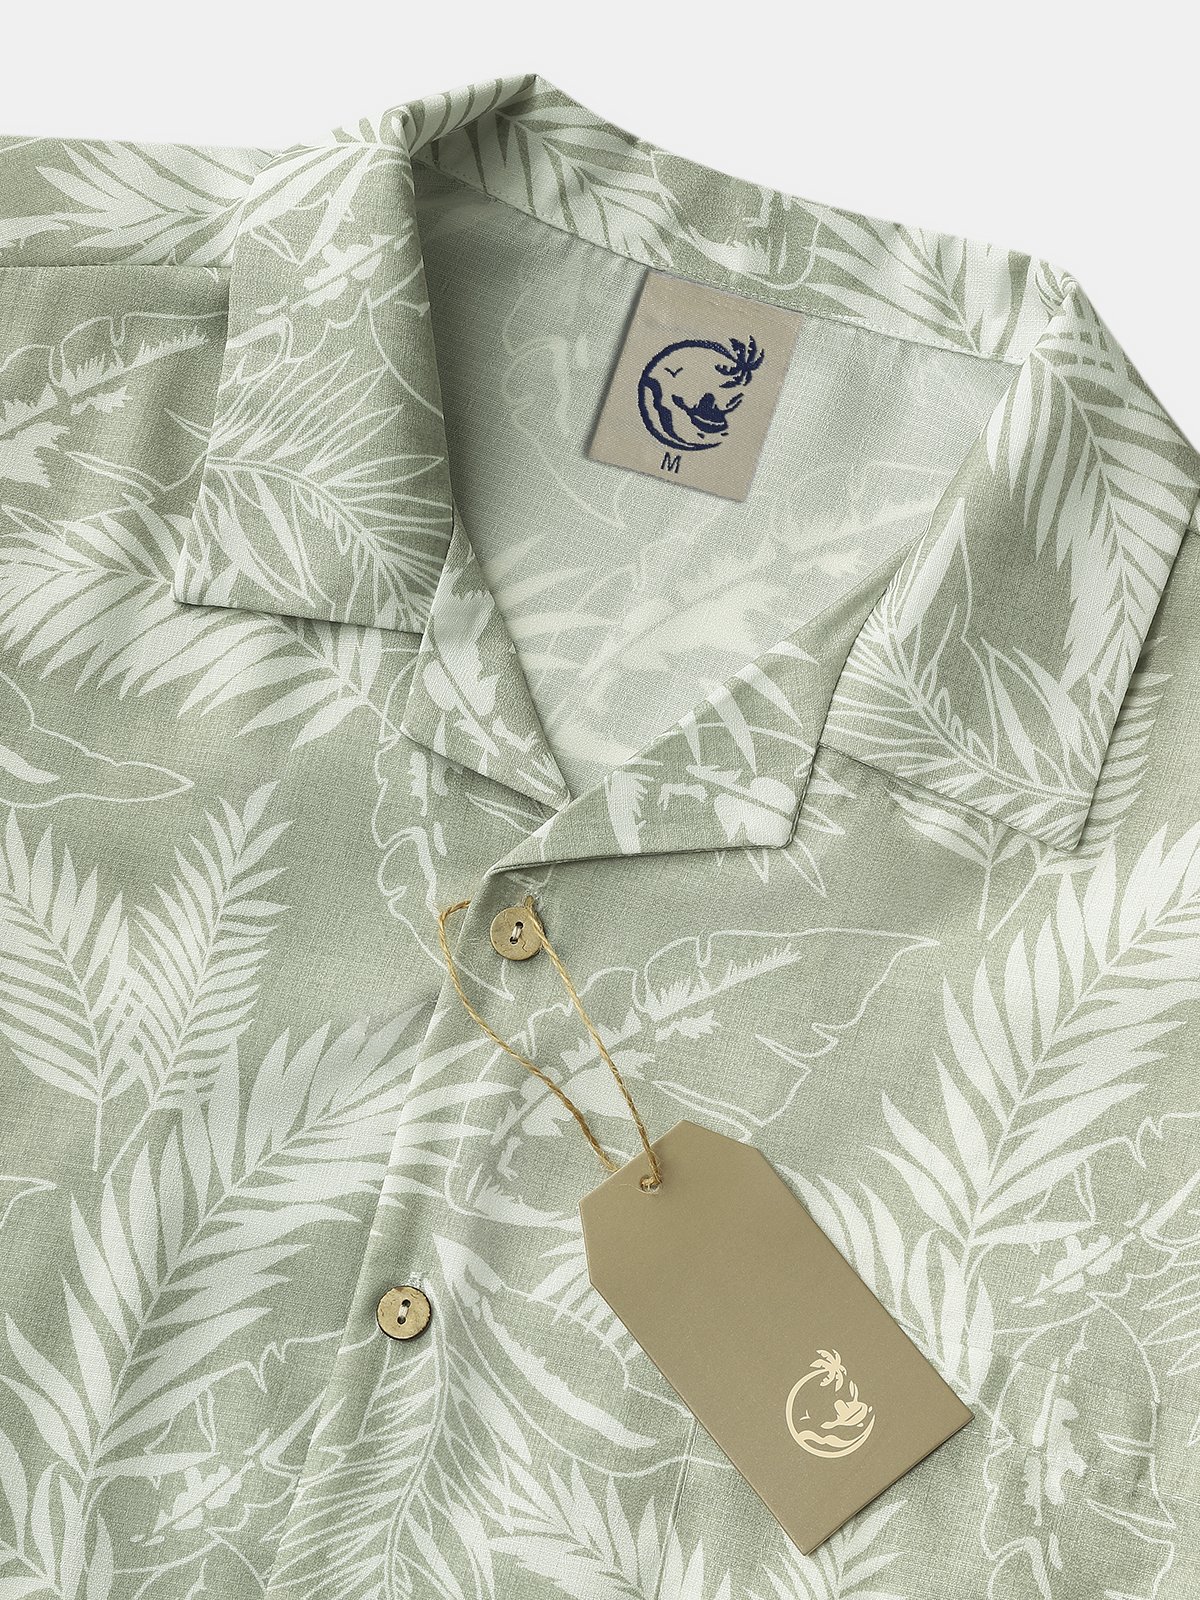 Mens Hawaiian Aloha  Leaf Loose Short Sleeve Shirt